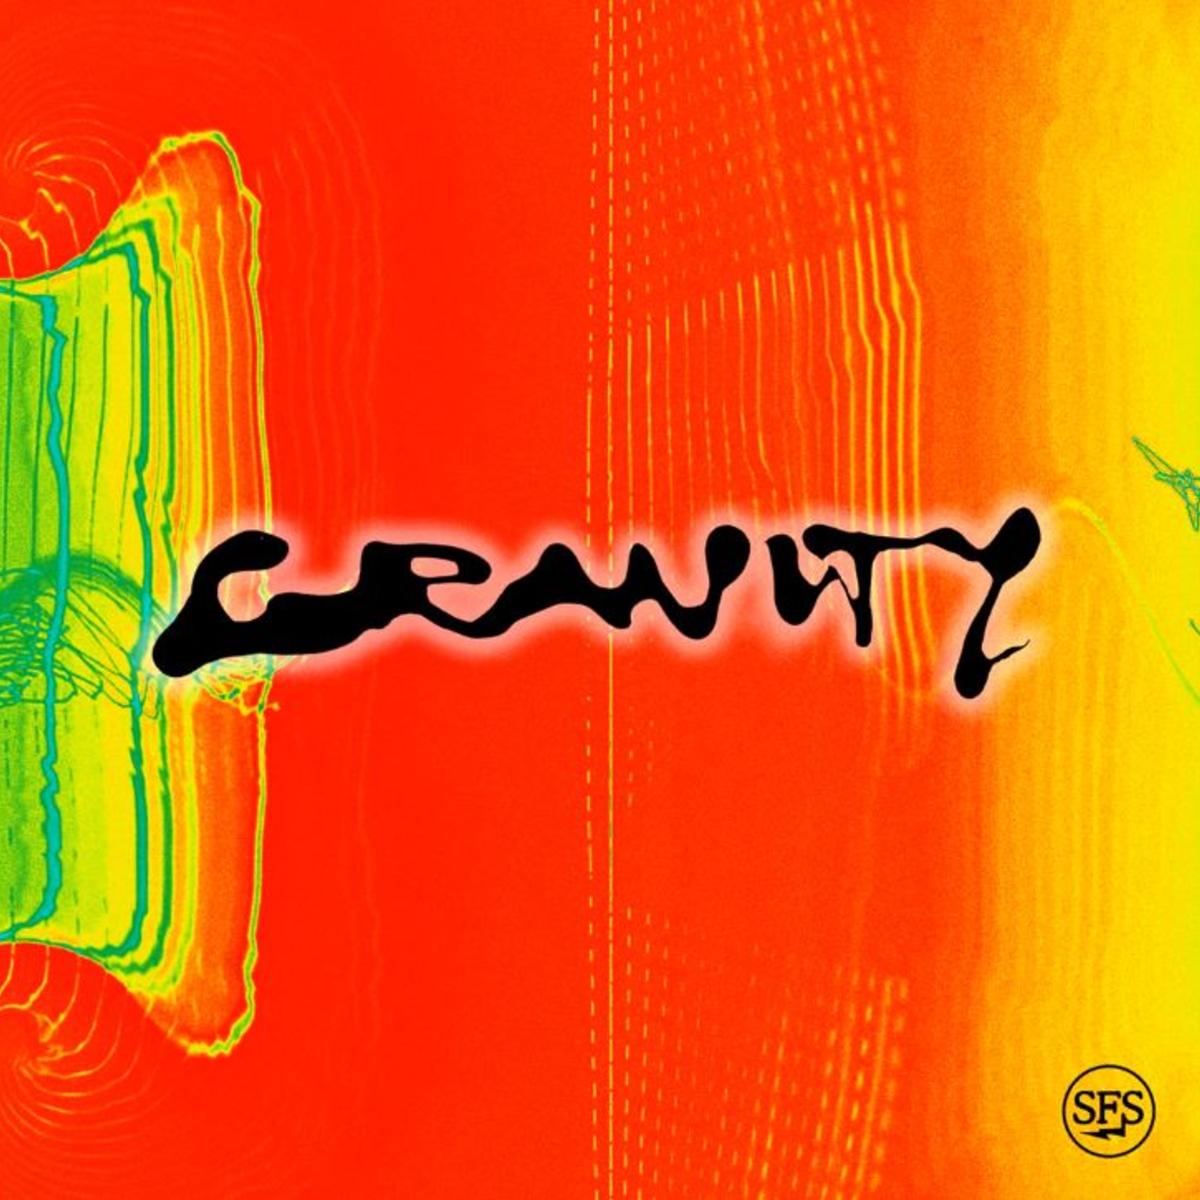 Brent Faiyaz & DJ Dahi Recruit Tyler, The Creator For “Gravity”